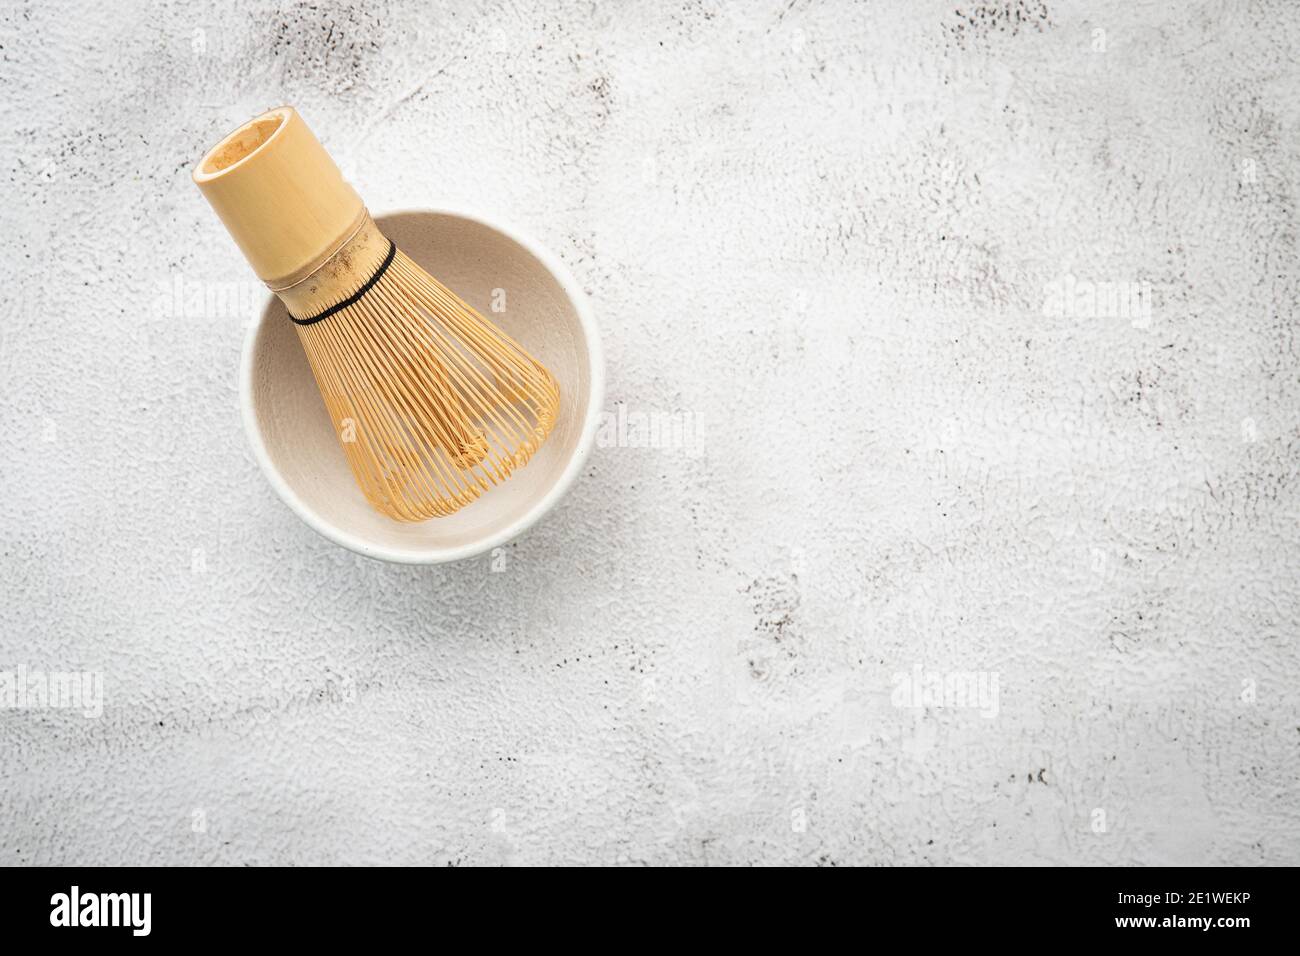 Matcha set bamboo matcha whisk and chashaku tea scoop,matcha ceramic bowl set up on white concrete background. Stock Photo